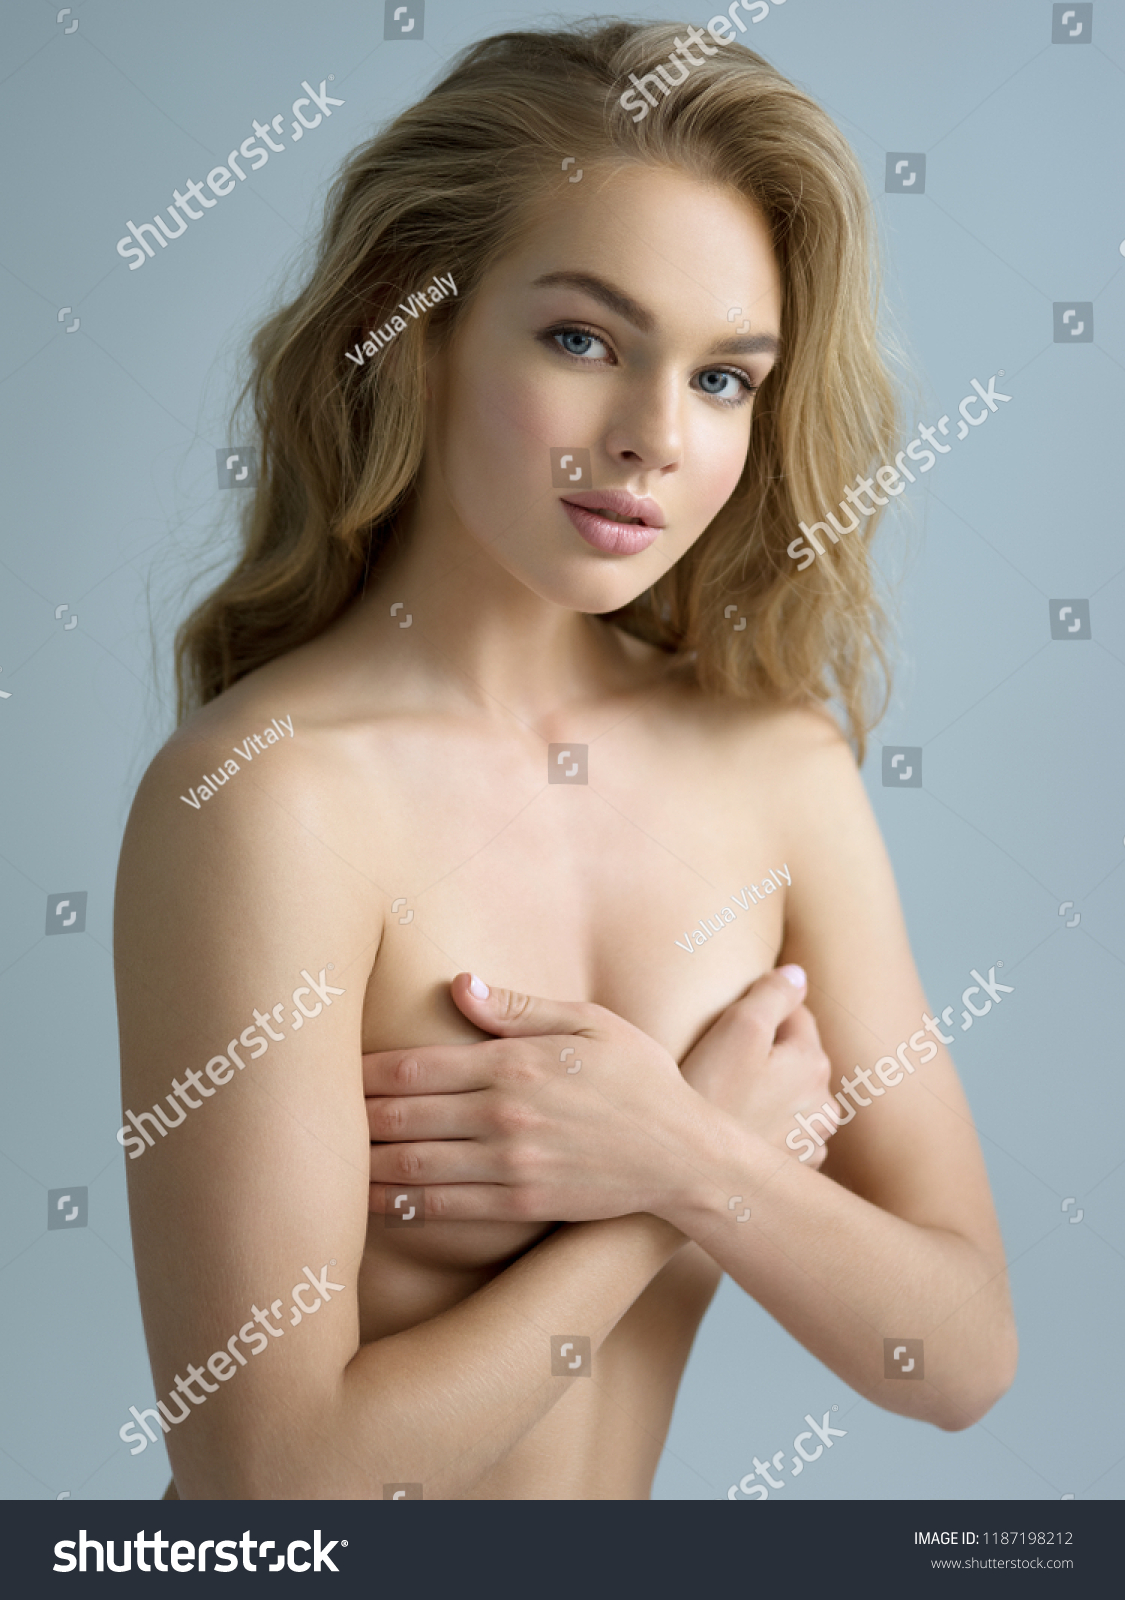 Nackt girl beautiful Hot Nude